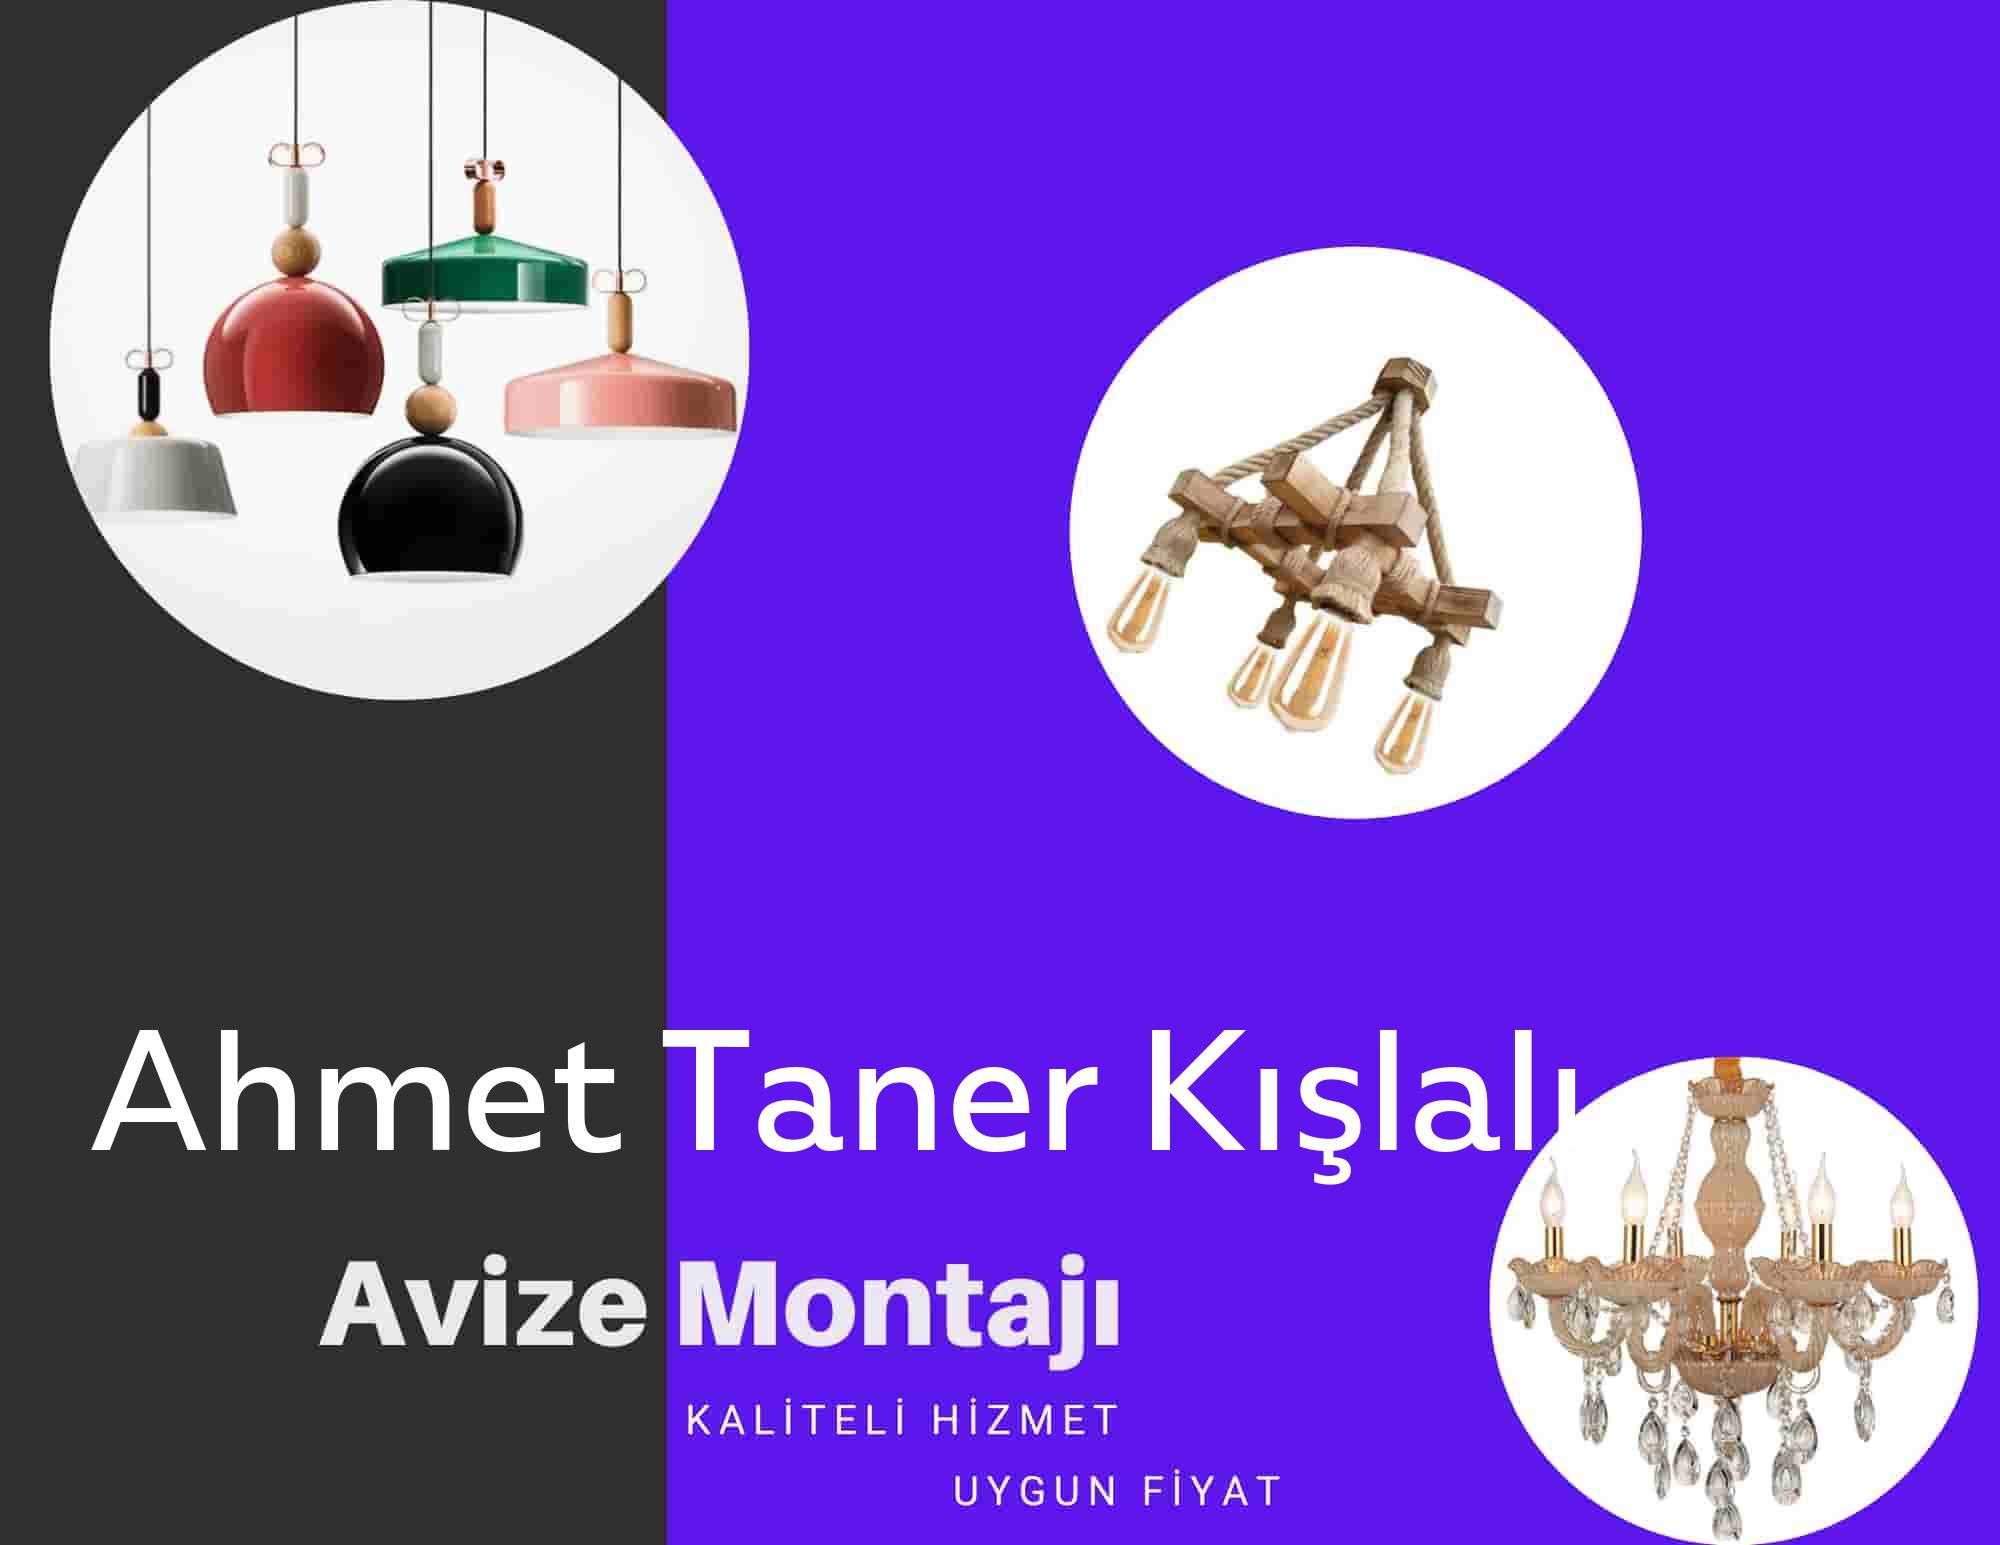 Ahmet Taner Kışlalı de avize montajı yapan yerler arıyorsanız elektrikcicagir anında size profesyonel avize montajı ustasını yönlendirir.